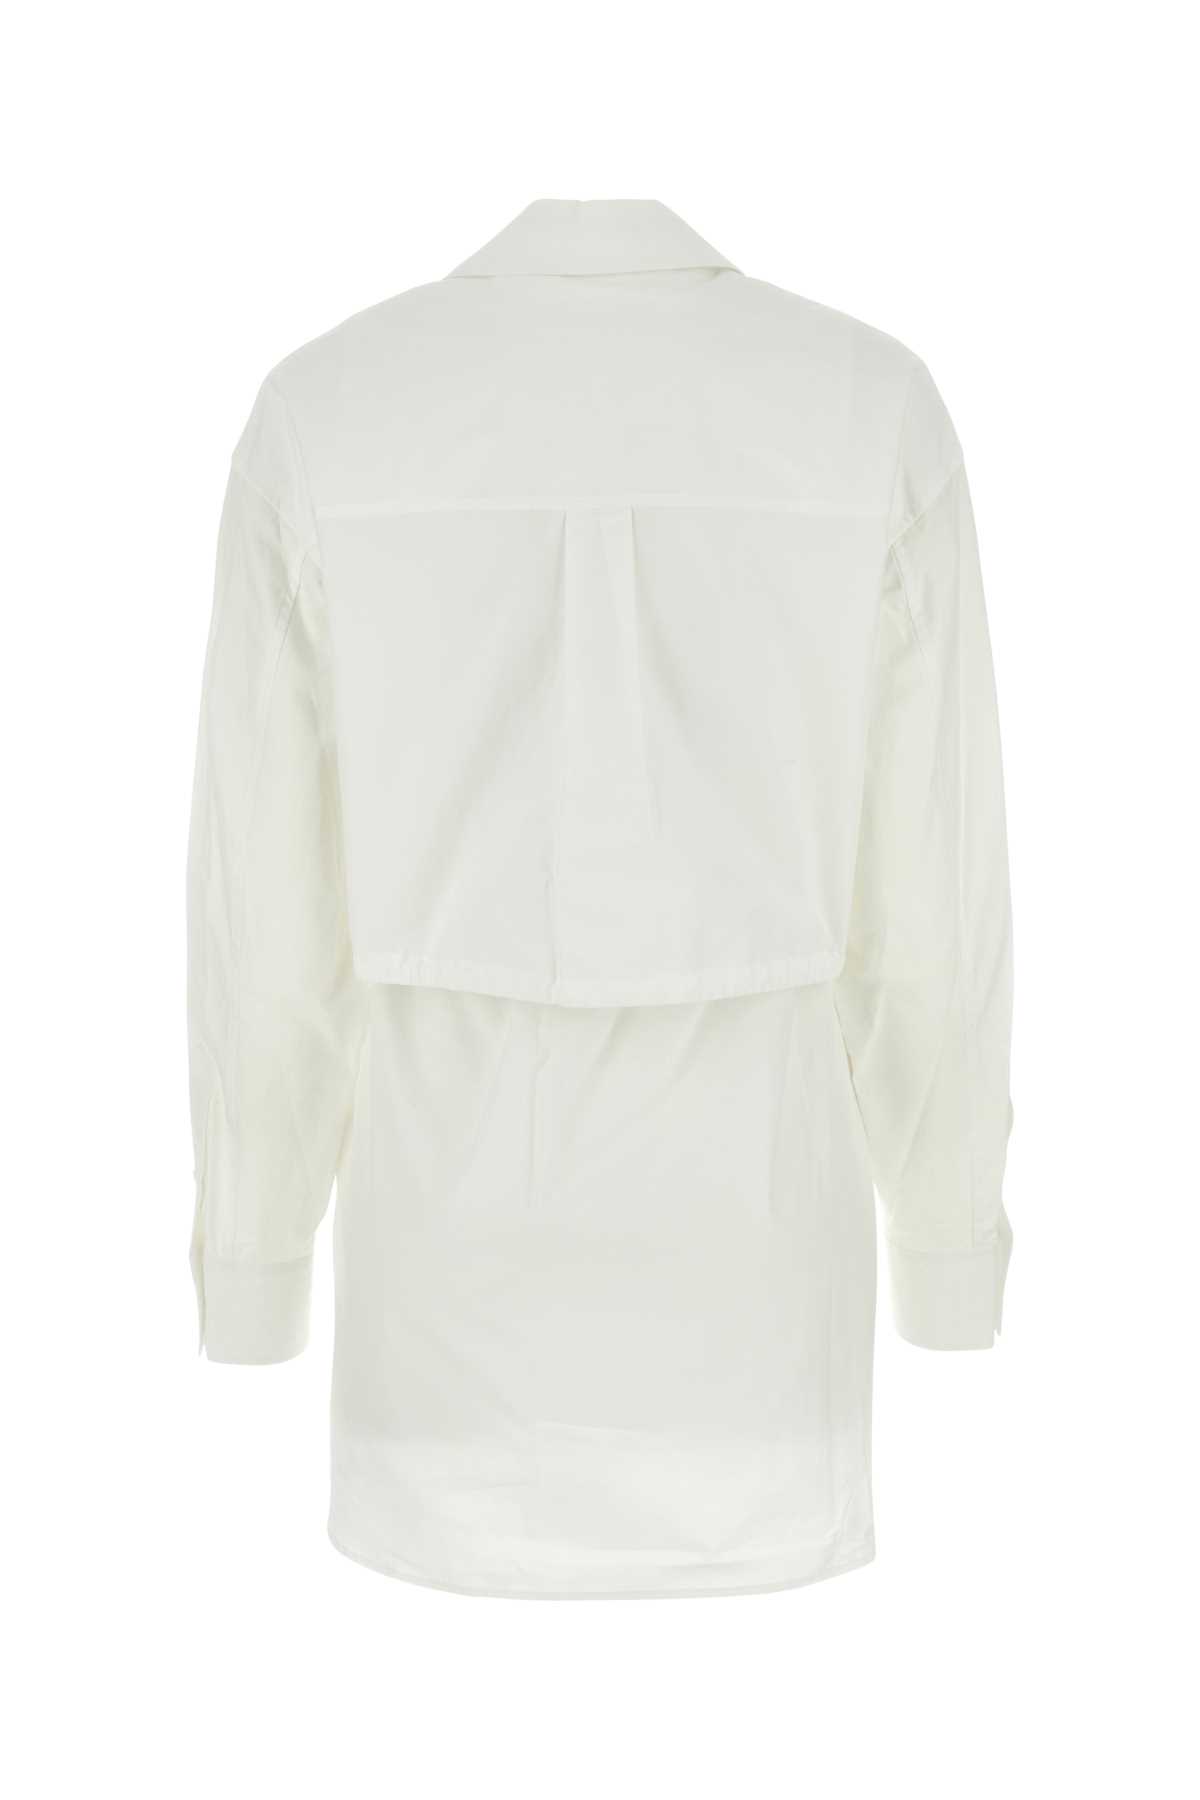 Alexander Wang T White Poplin Shirt Dress